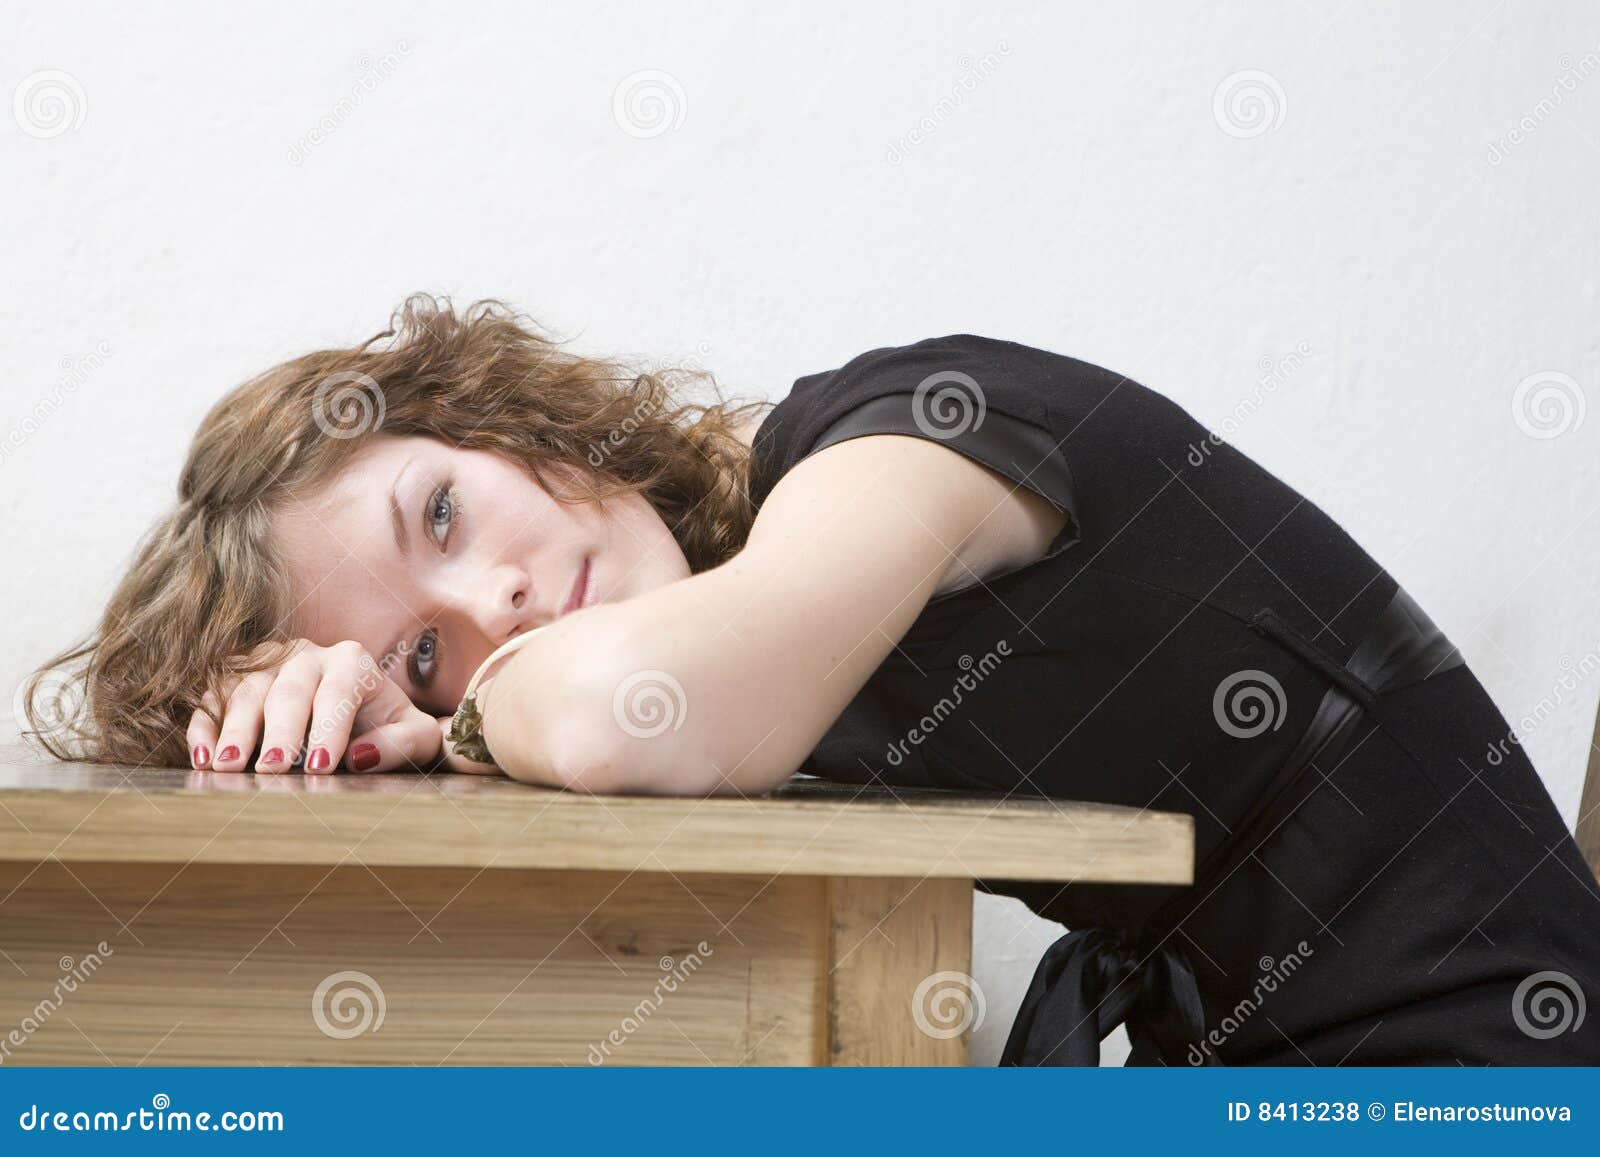 Лежать на затылке. Девушка лежит на столе головой. Человек лежит на столе. Девушка положила голову на стол. Головой об стол.